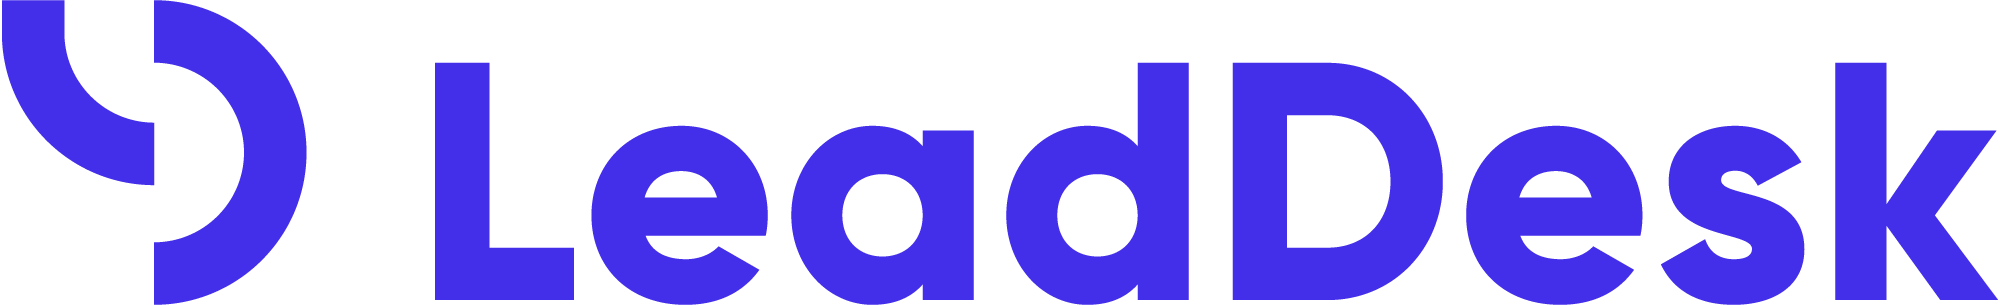 leaddesk_logo_blue